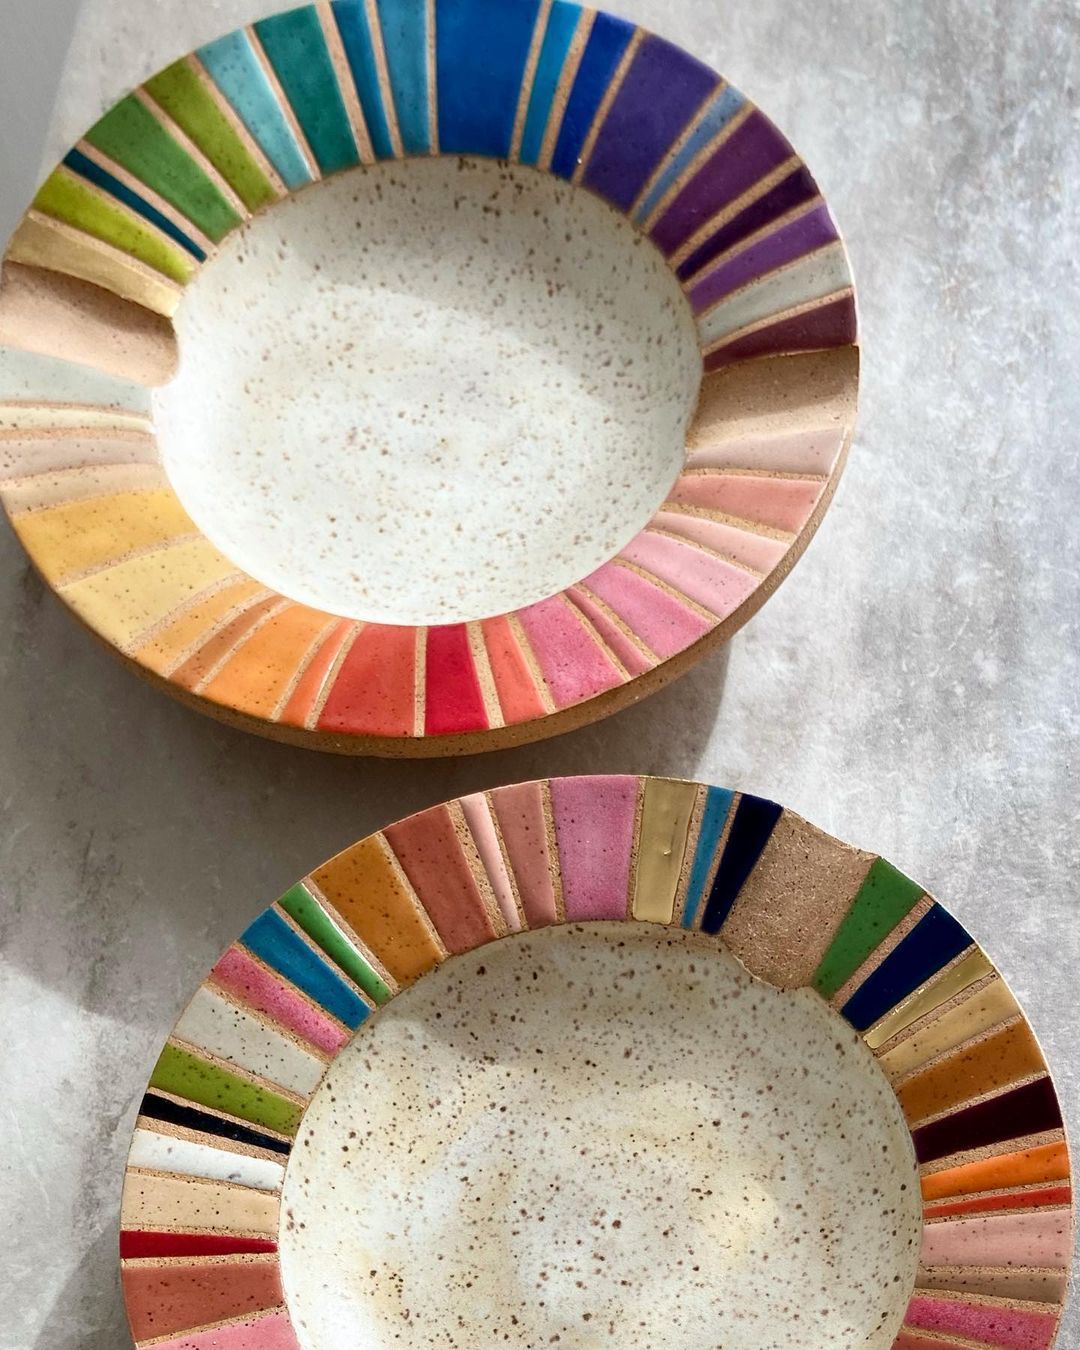 Rainbow Ceramics Gorgeous Multicolored Ceramic Pieces By Christine Tenenholtz (1)